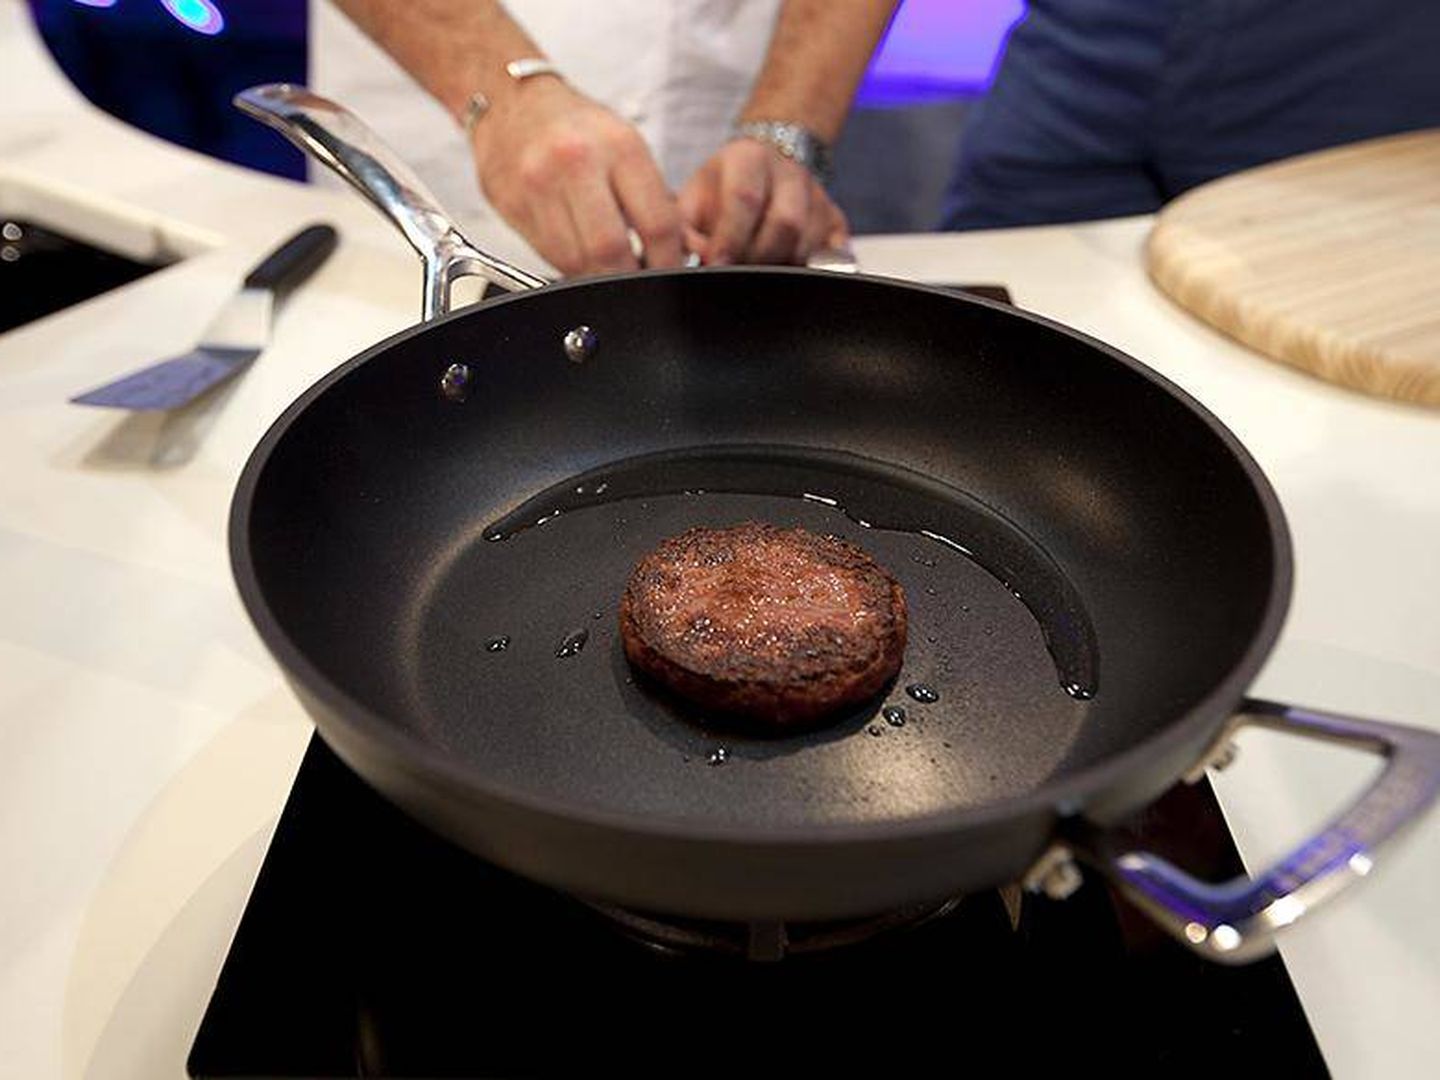 Primera hamburgesa sintética cocinada en 2013. (Cultured Beef)